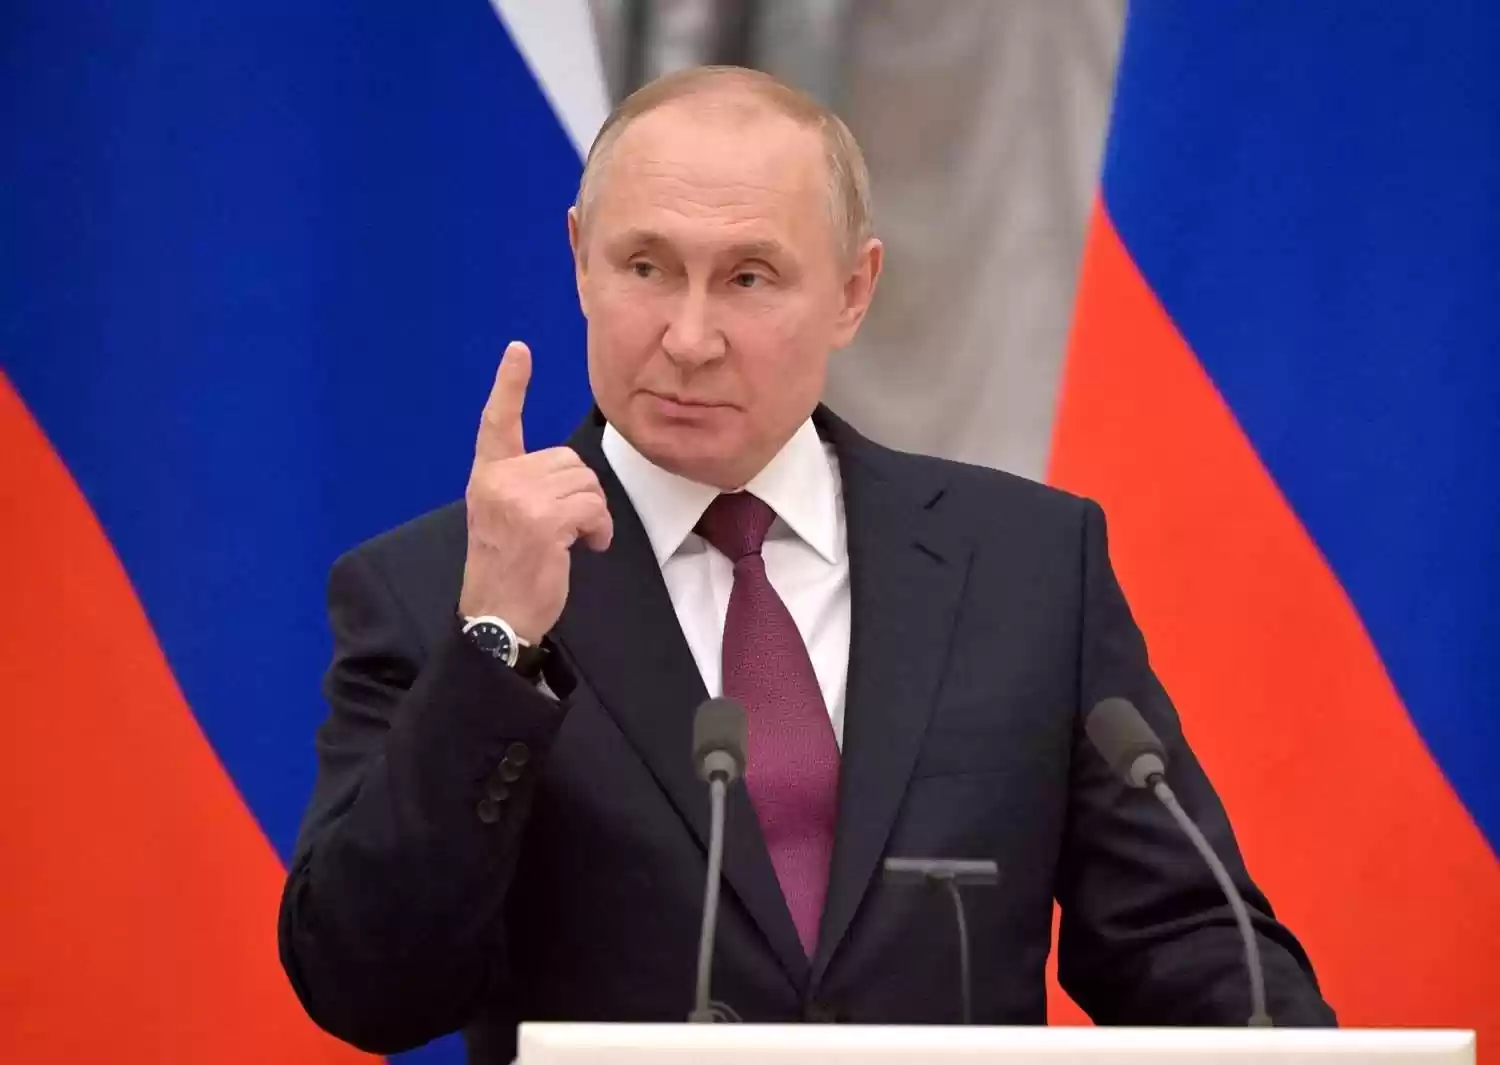 بوتين يقطع آخر حبل ود مع أميركا.. ويؤكد حتمية انتصار روسيا